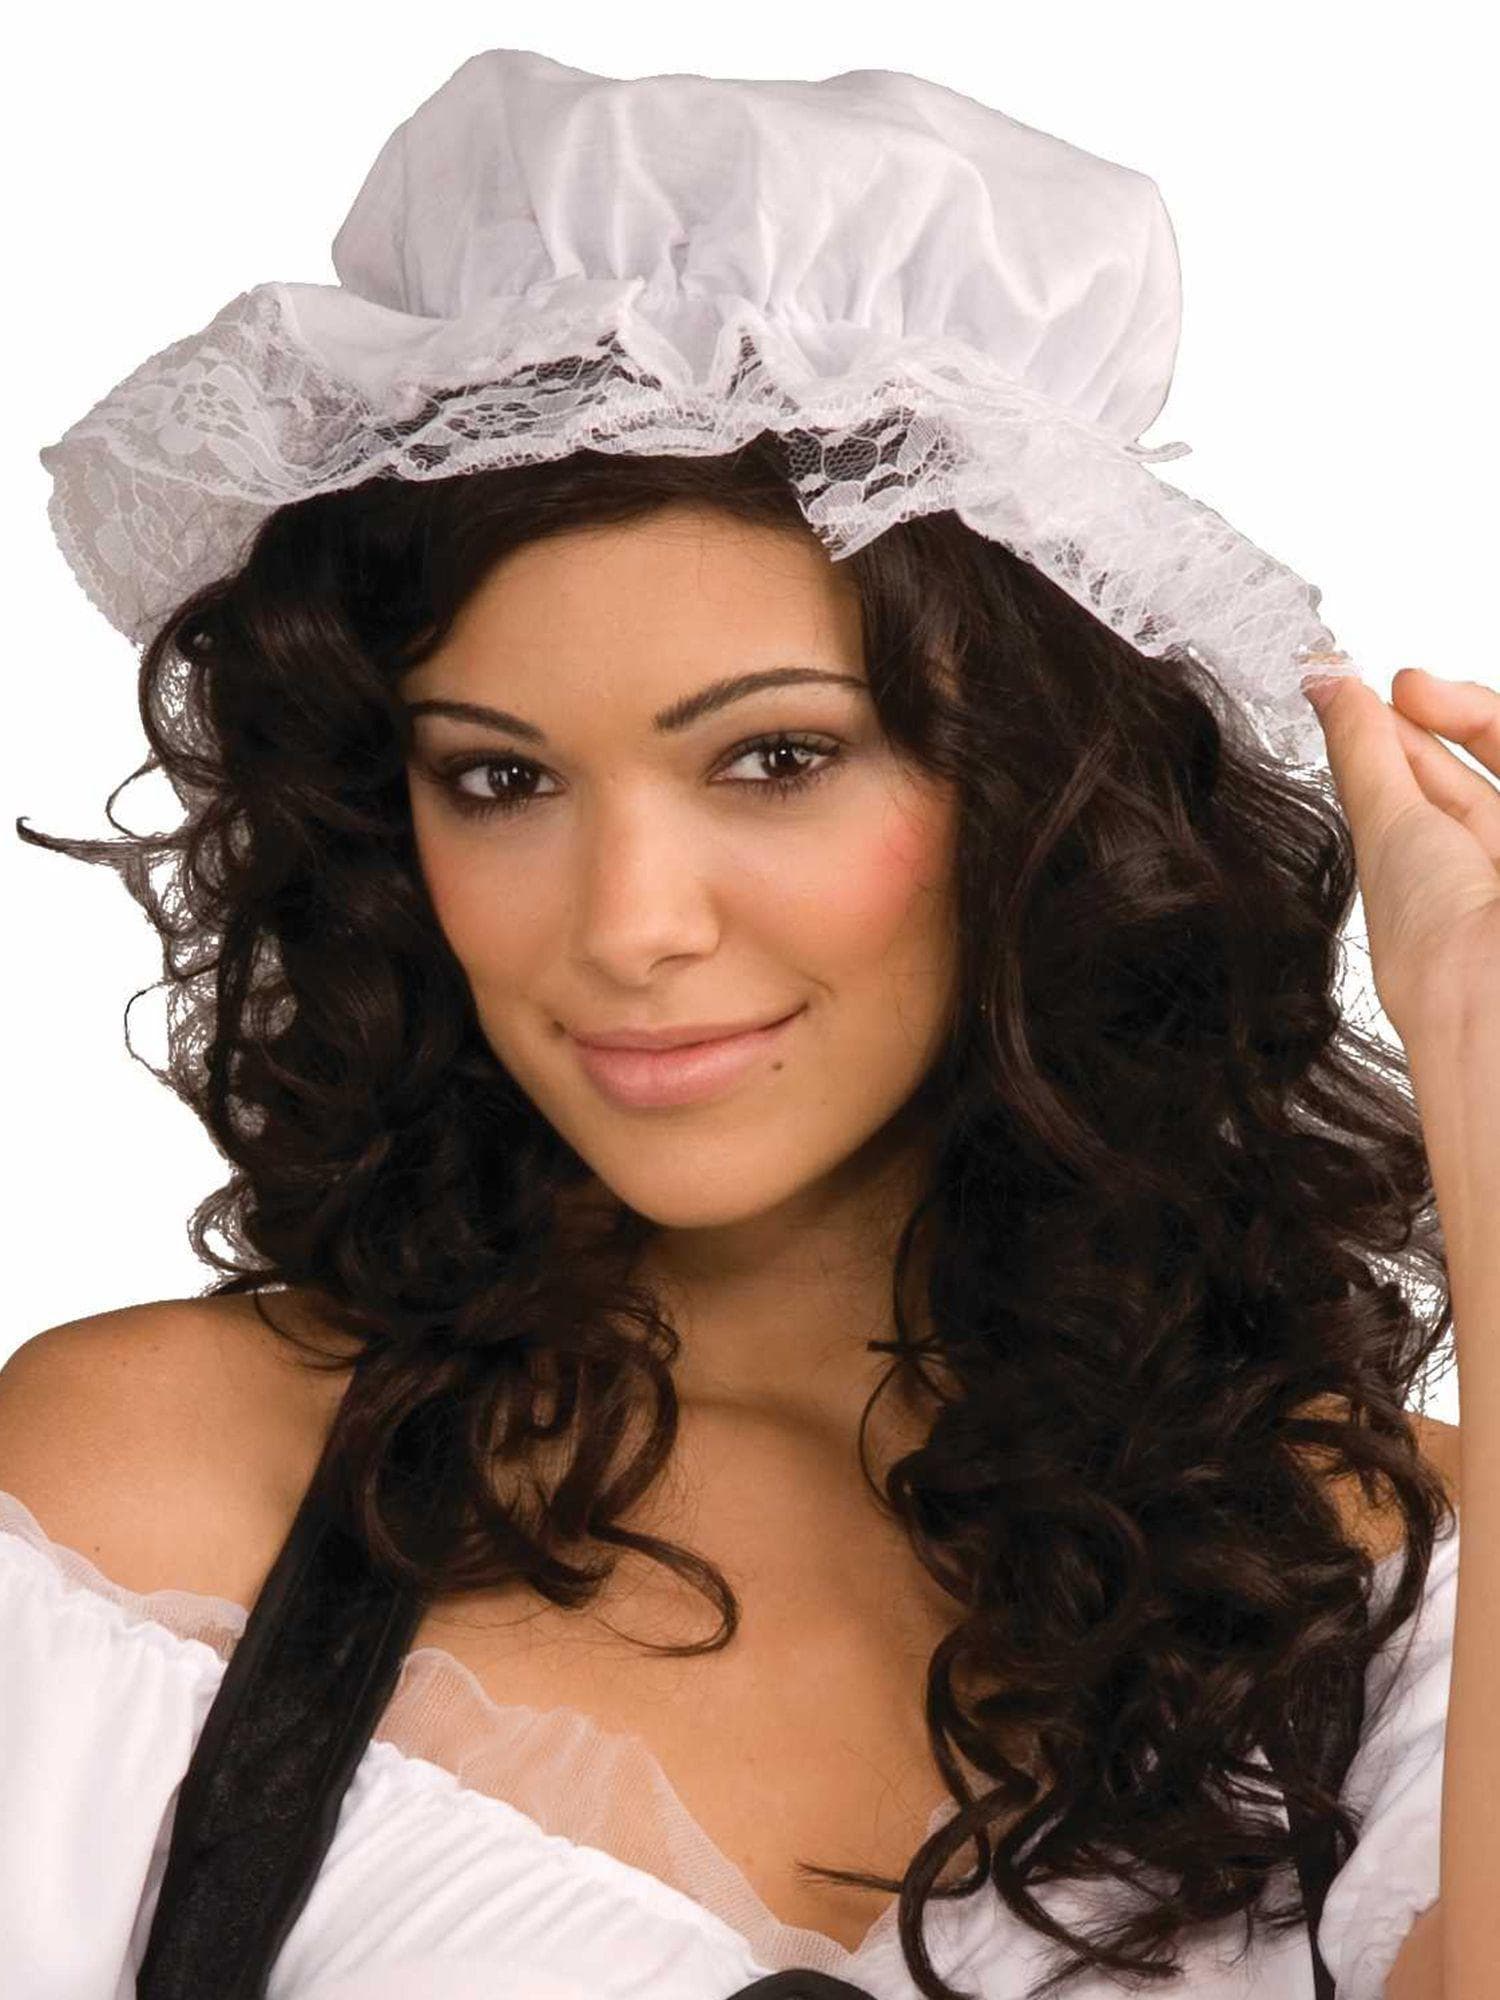 Women's Colonial Mob Cap Bonnet - costumes.com